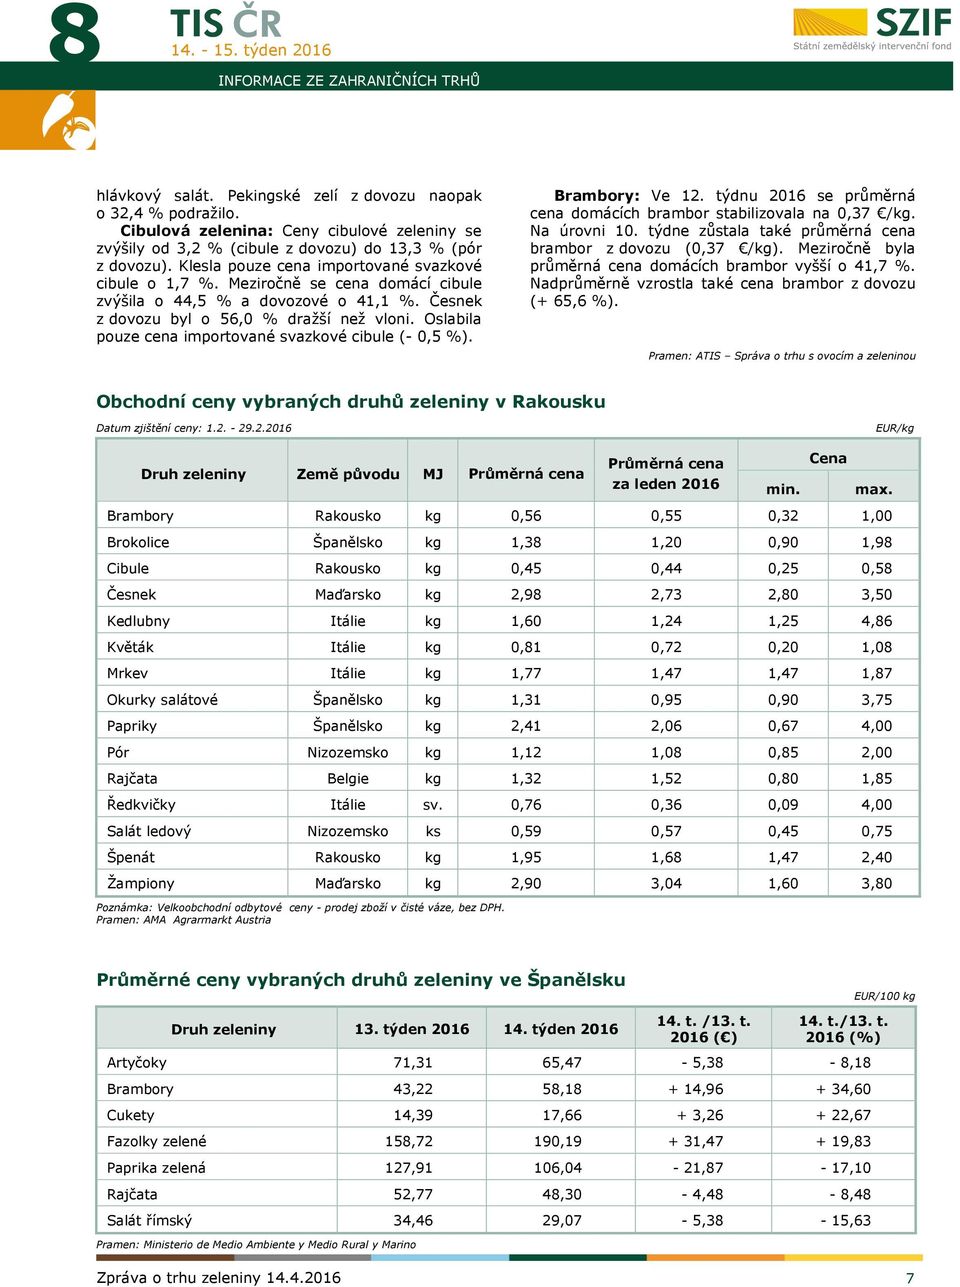 Meziročně se cena domácí cibule zvýšila o 44,5 % a dovozové o 41,1 %. Česnek z dovozu byl o 56,0 % dražší než vloni. Oslabila pouze cena importované svazkové cibule (- 0,5 %). Brambory: Ve 12.